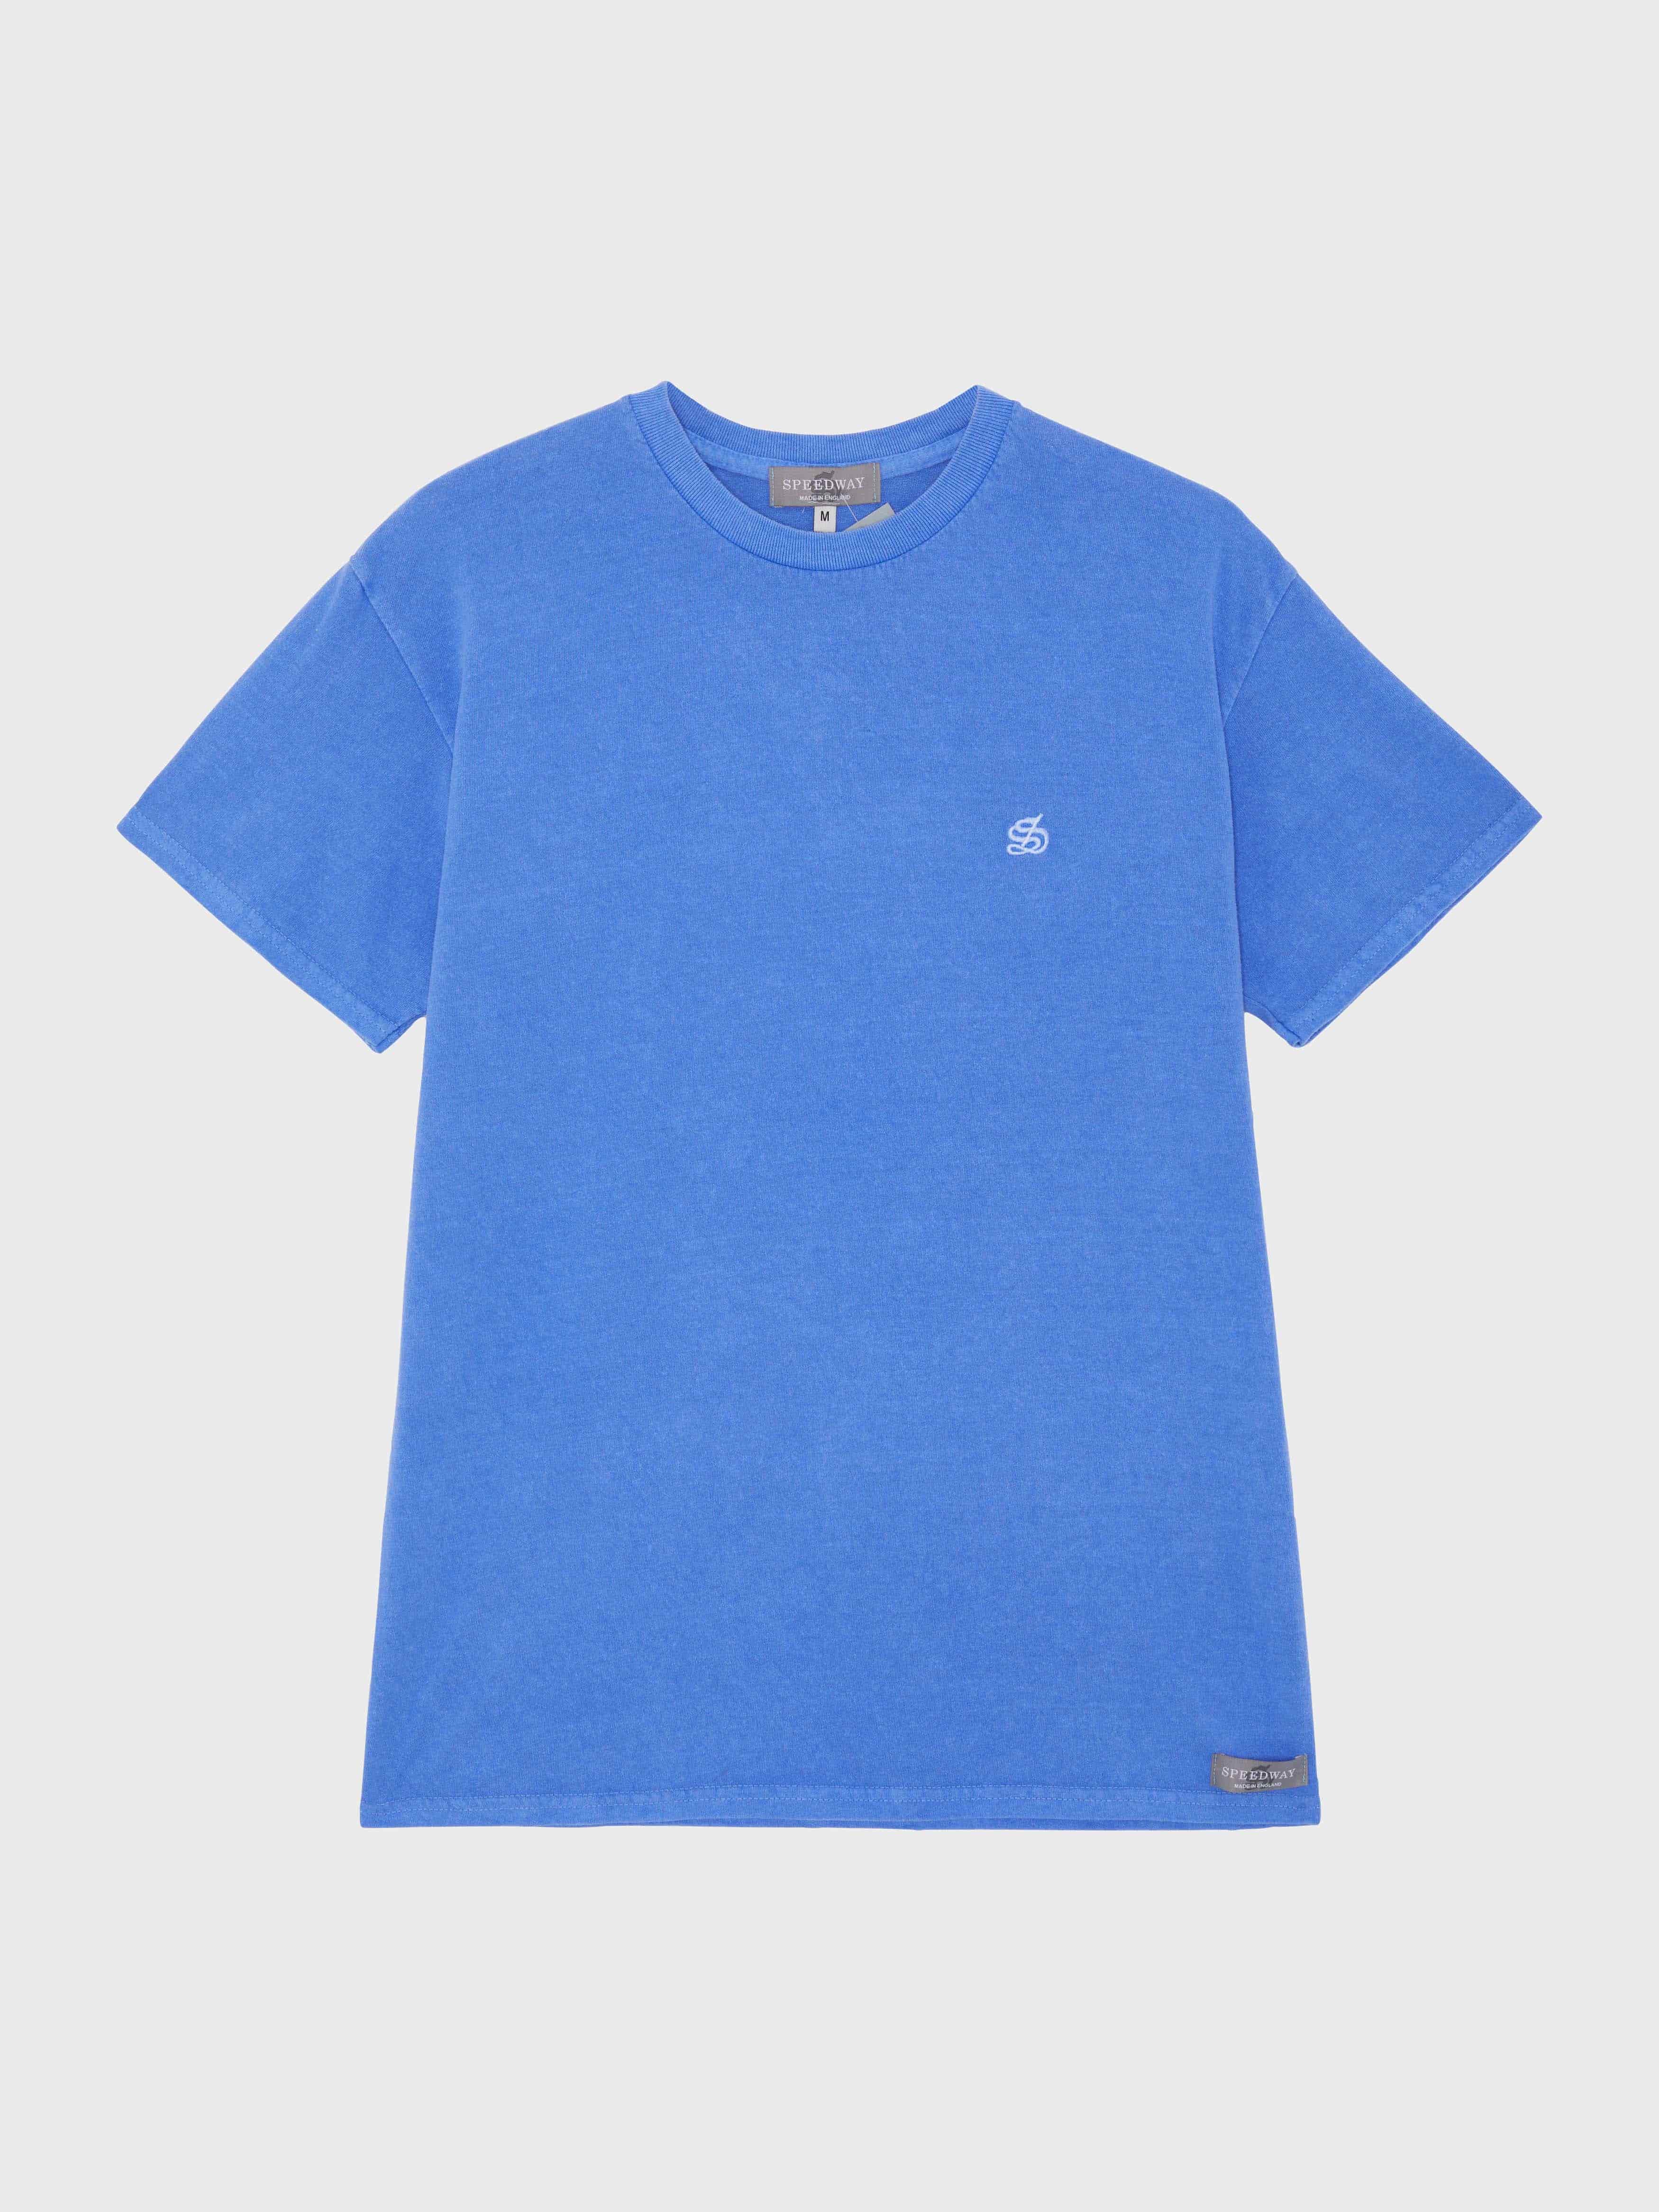 Classic Speedway Short Sleeve T-Shirt - Ocean Blue